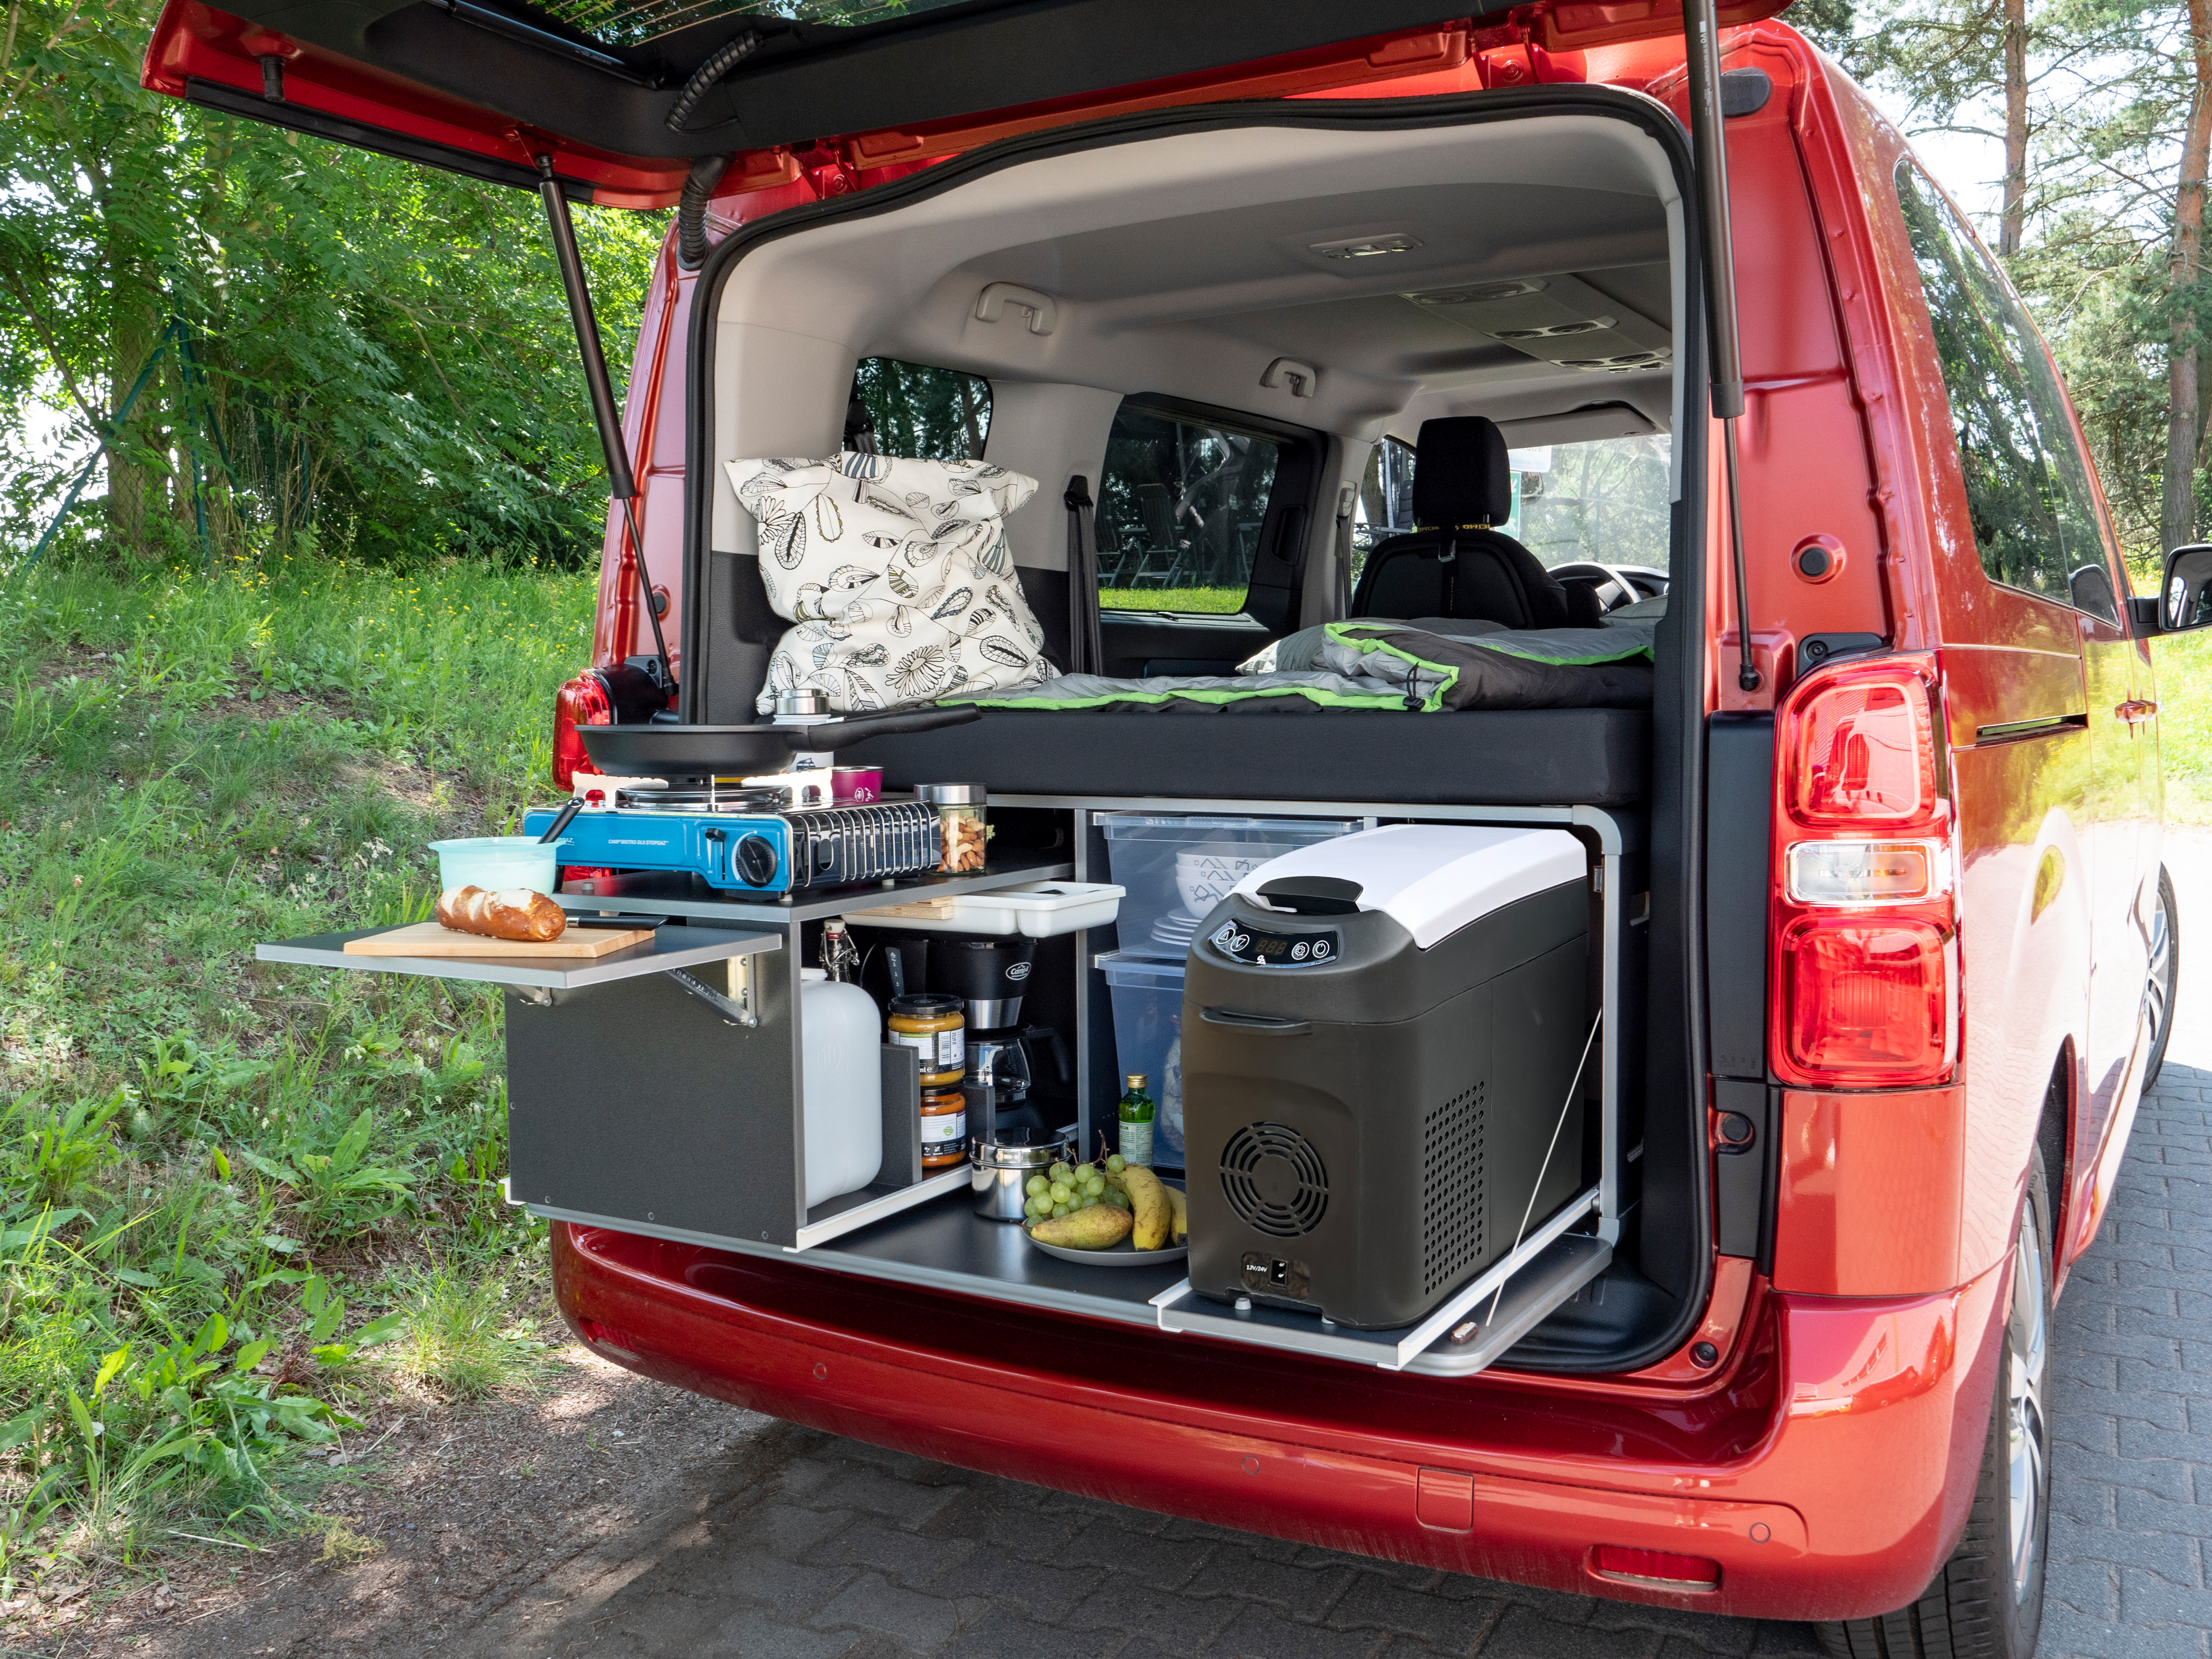 VW CADDY Campingbox - Caddy Camper Schlafsystem - VW CADDY Camper Ausbau